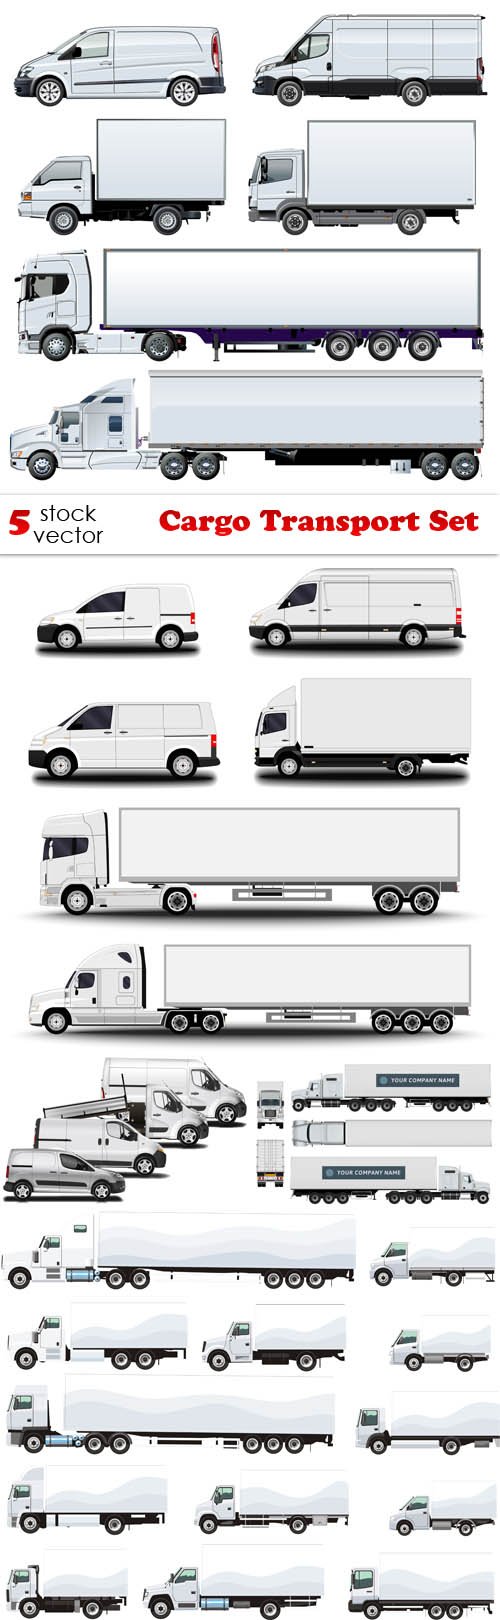 Vectors - Cargo Transport Set